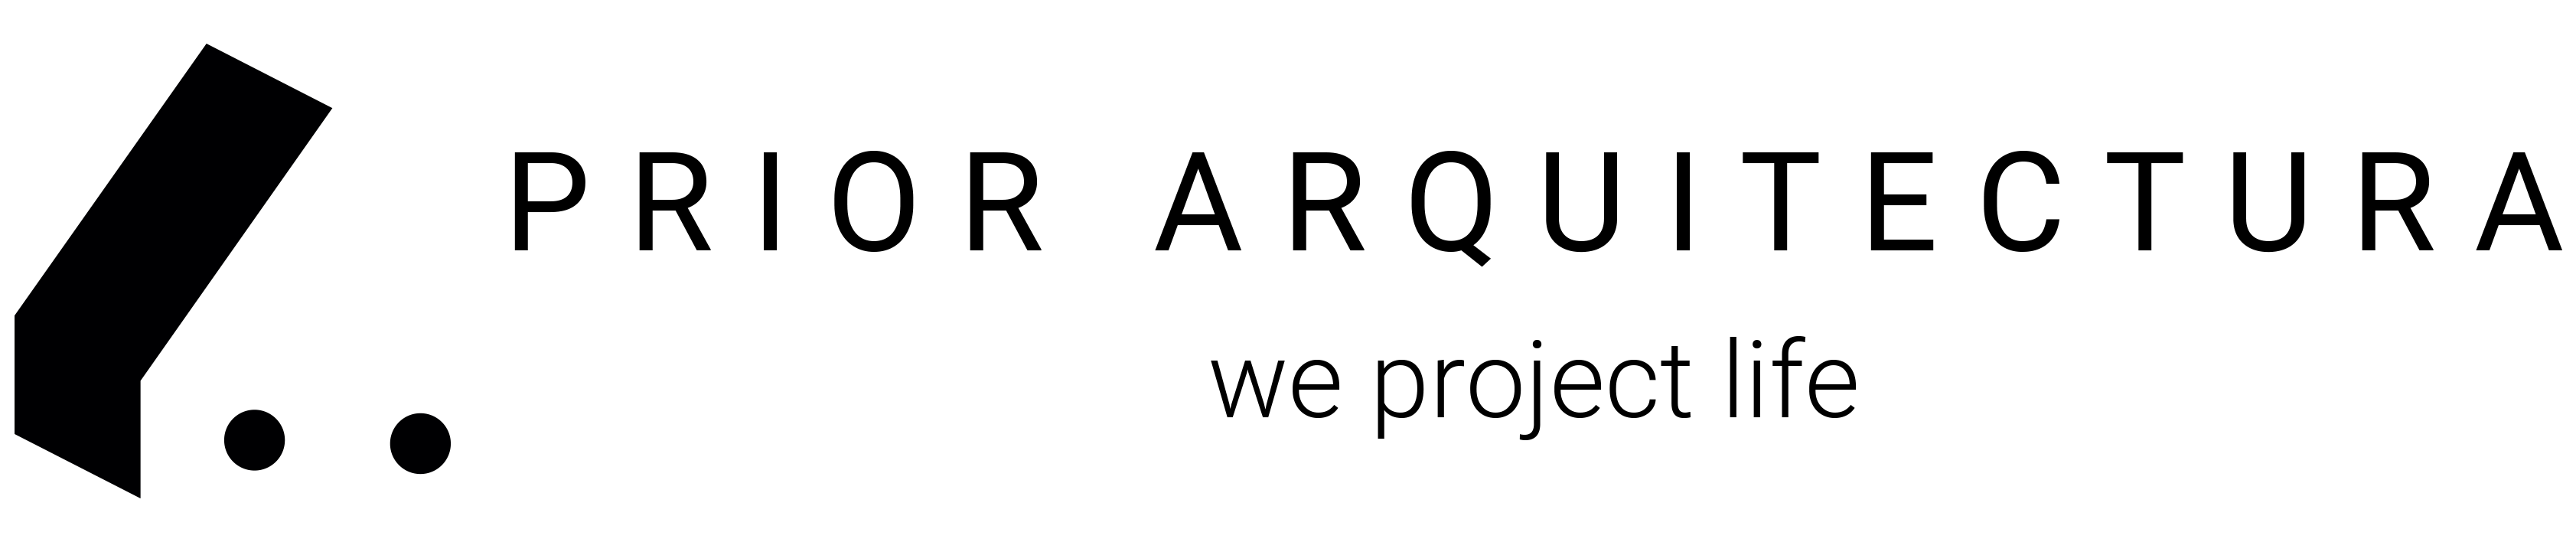 Logo email Prior Arquitectura Negre